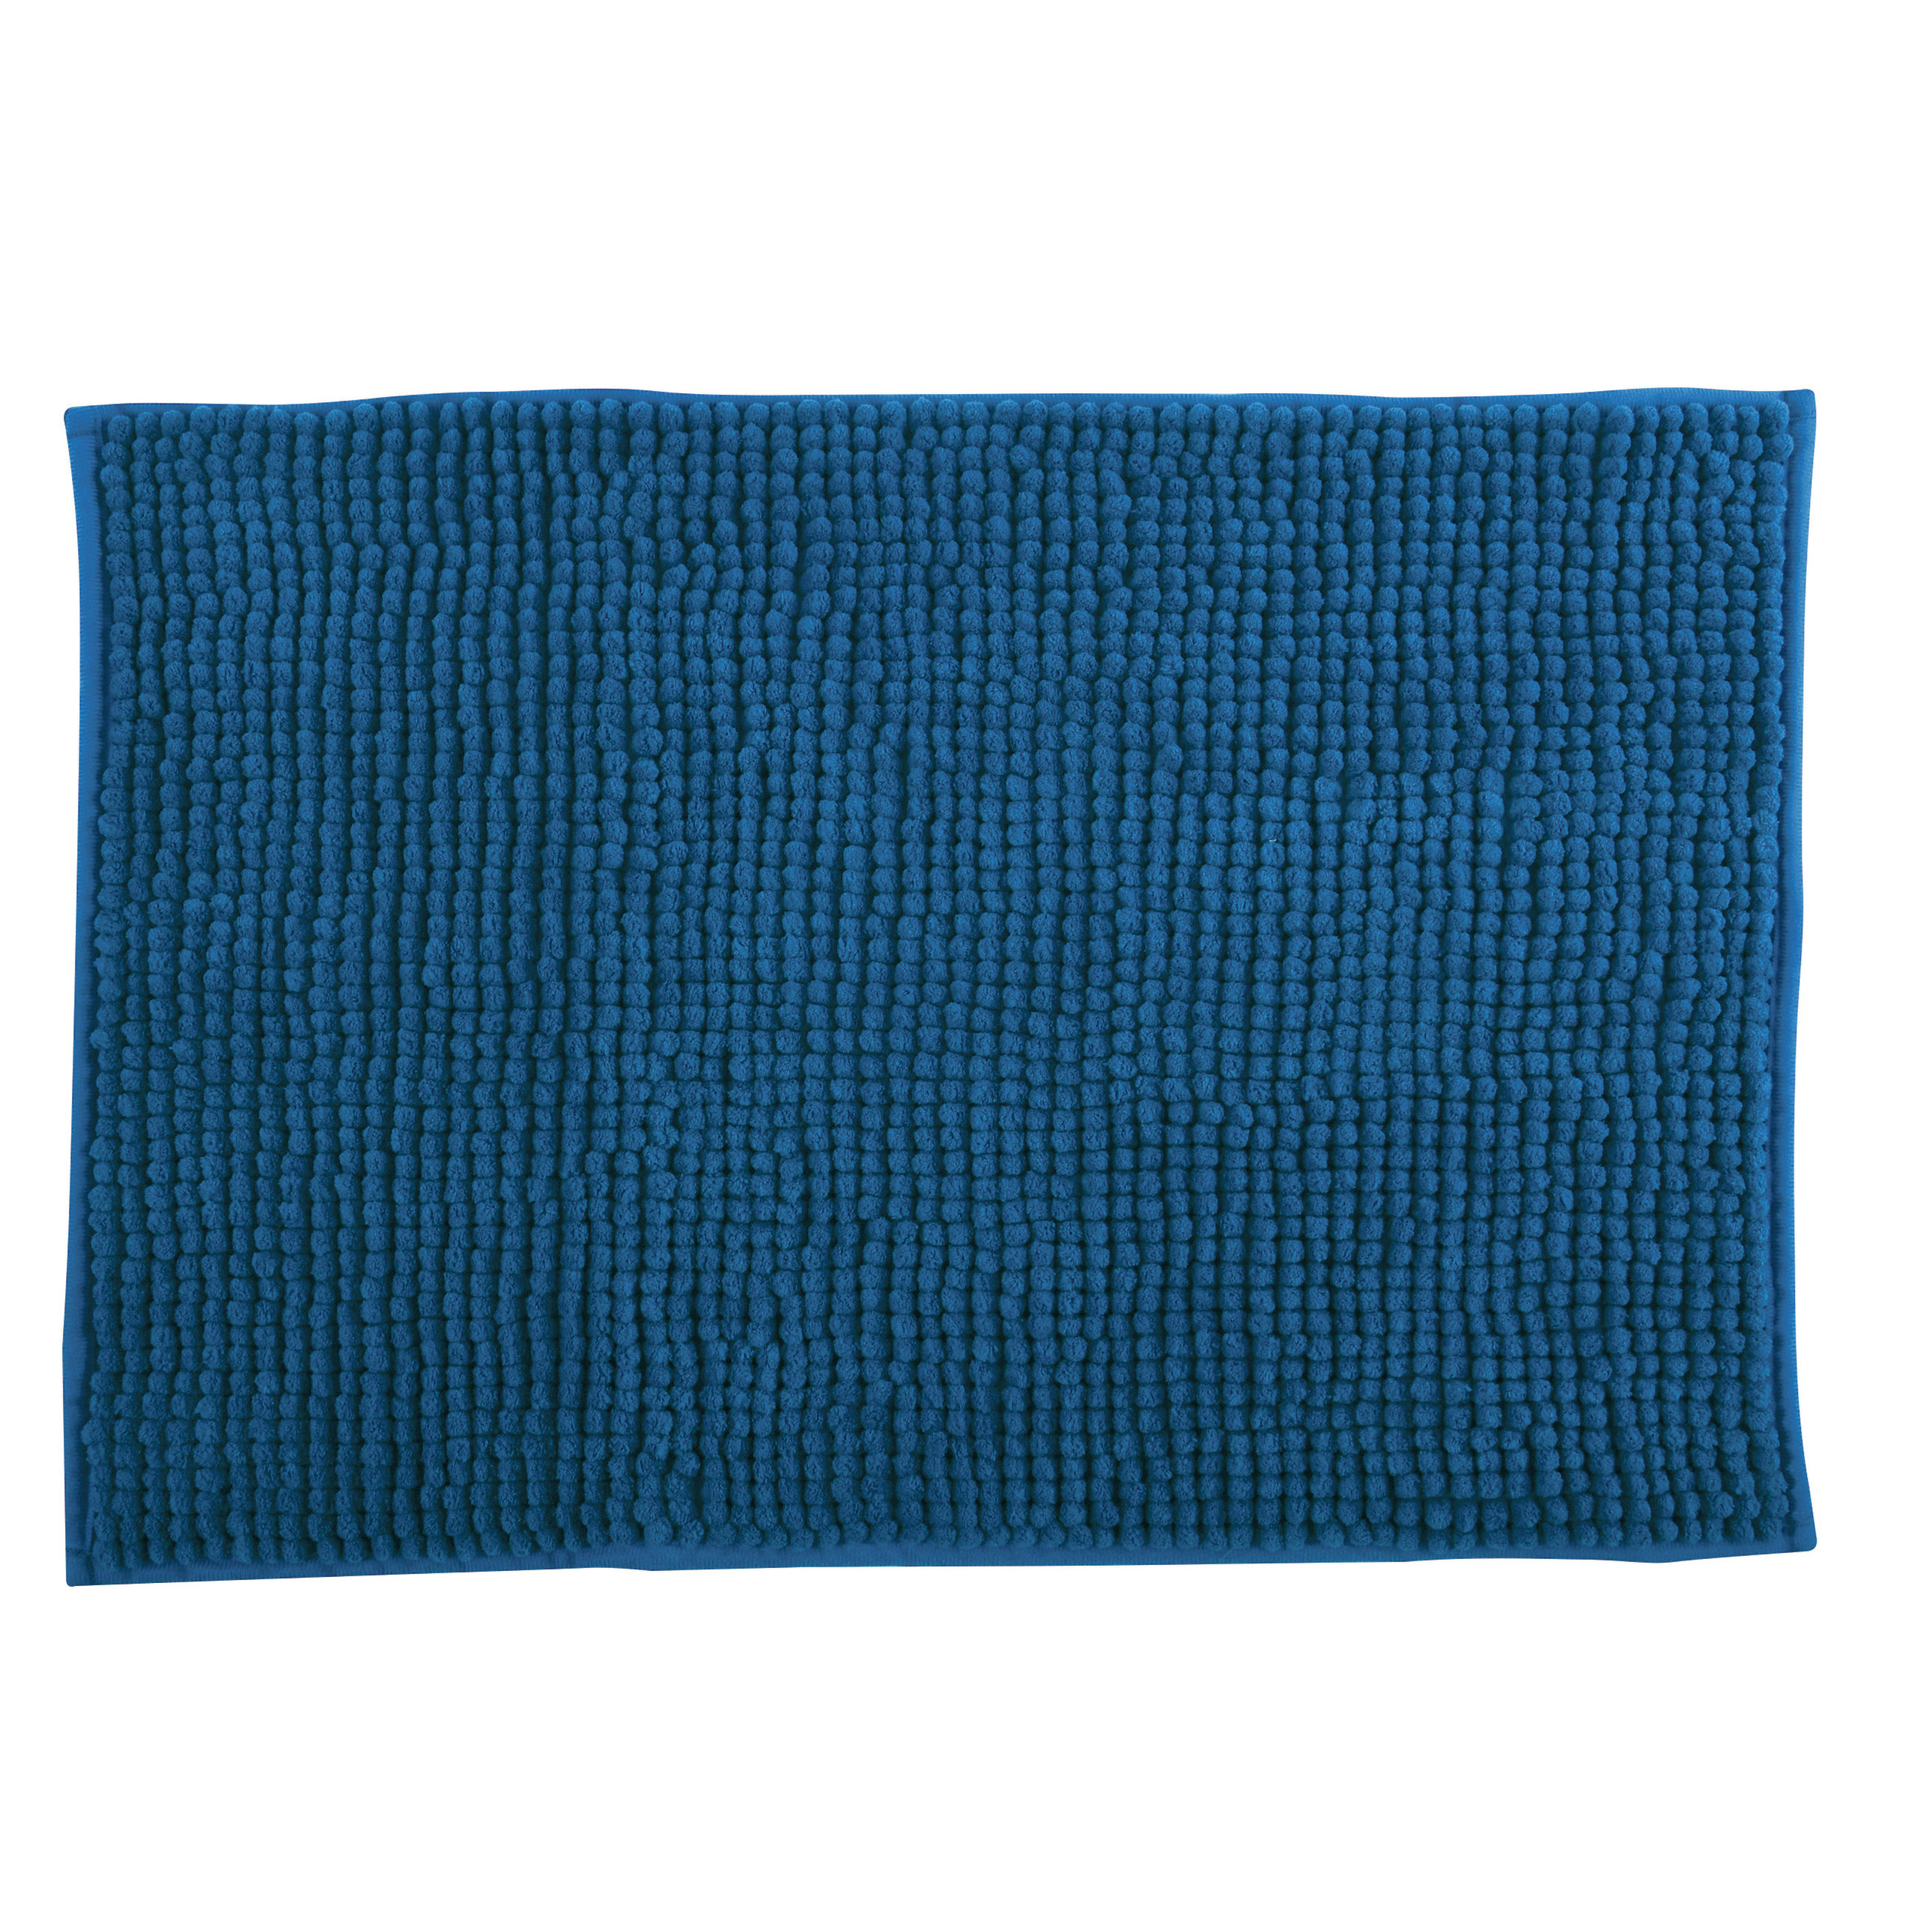 Badkamerkleedje-badmat tapijt voor op de vloer petrol blauw 40 x 60 cm